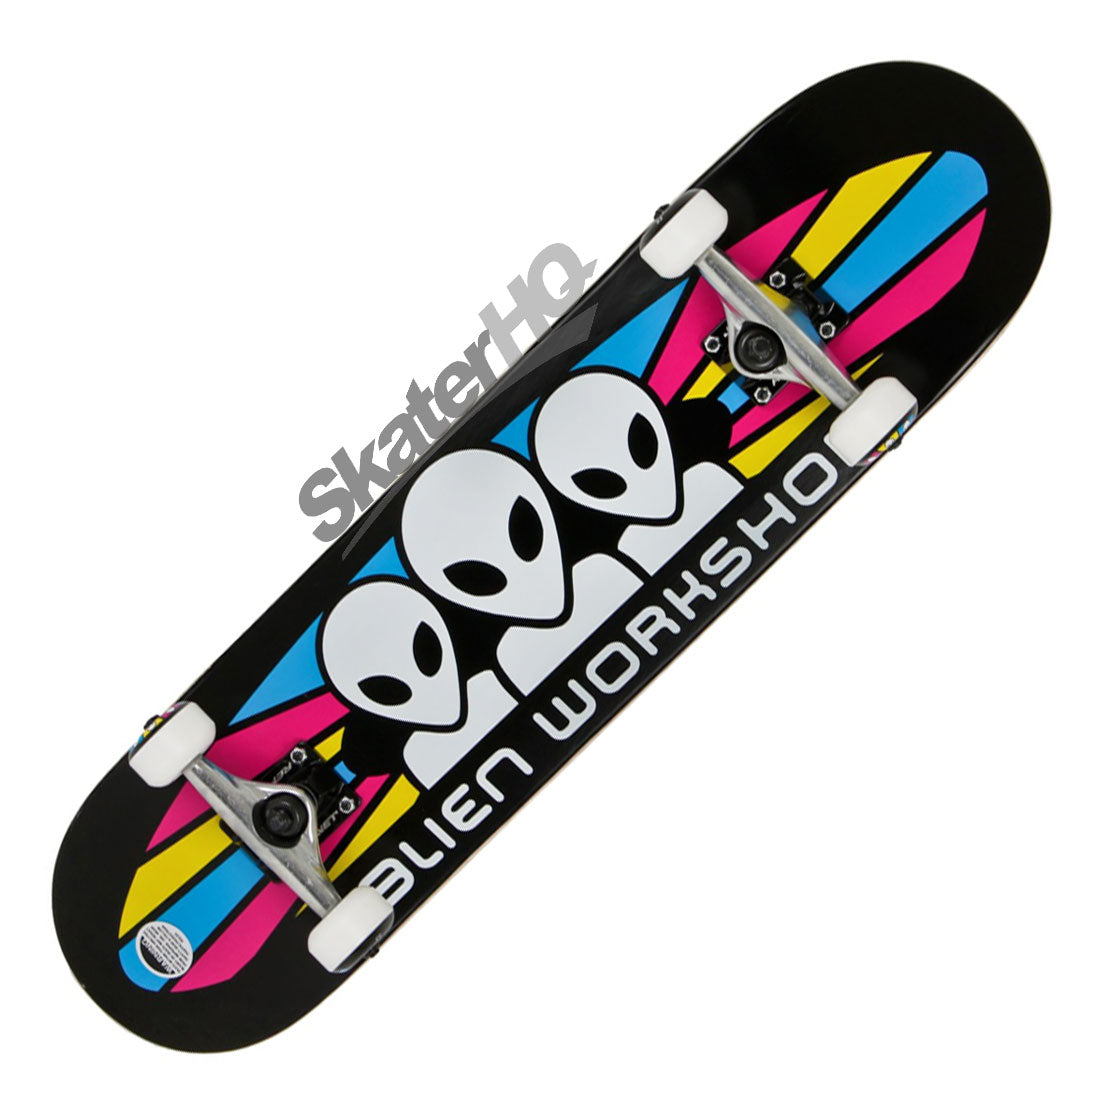 Alien Workshop CMYK Spectrum 7.75 Complete - Black Skateboard Completes Modern Street